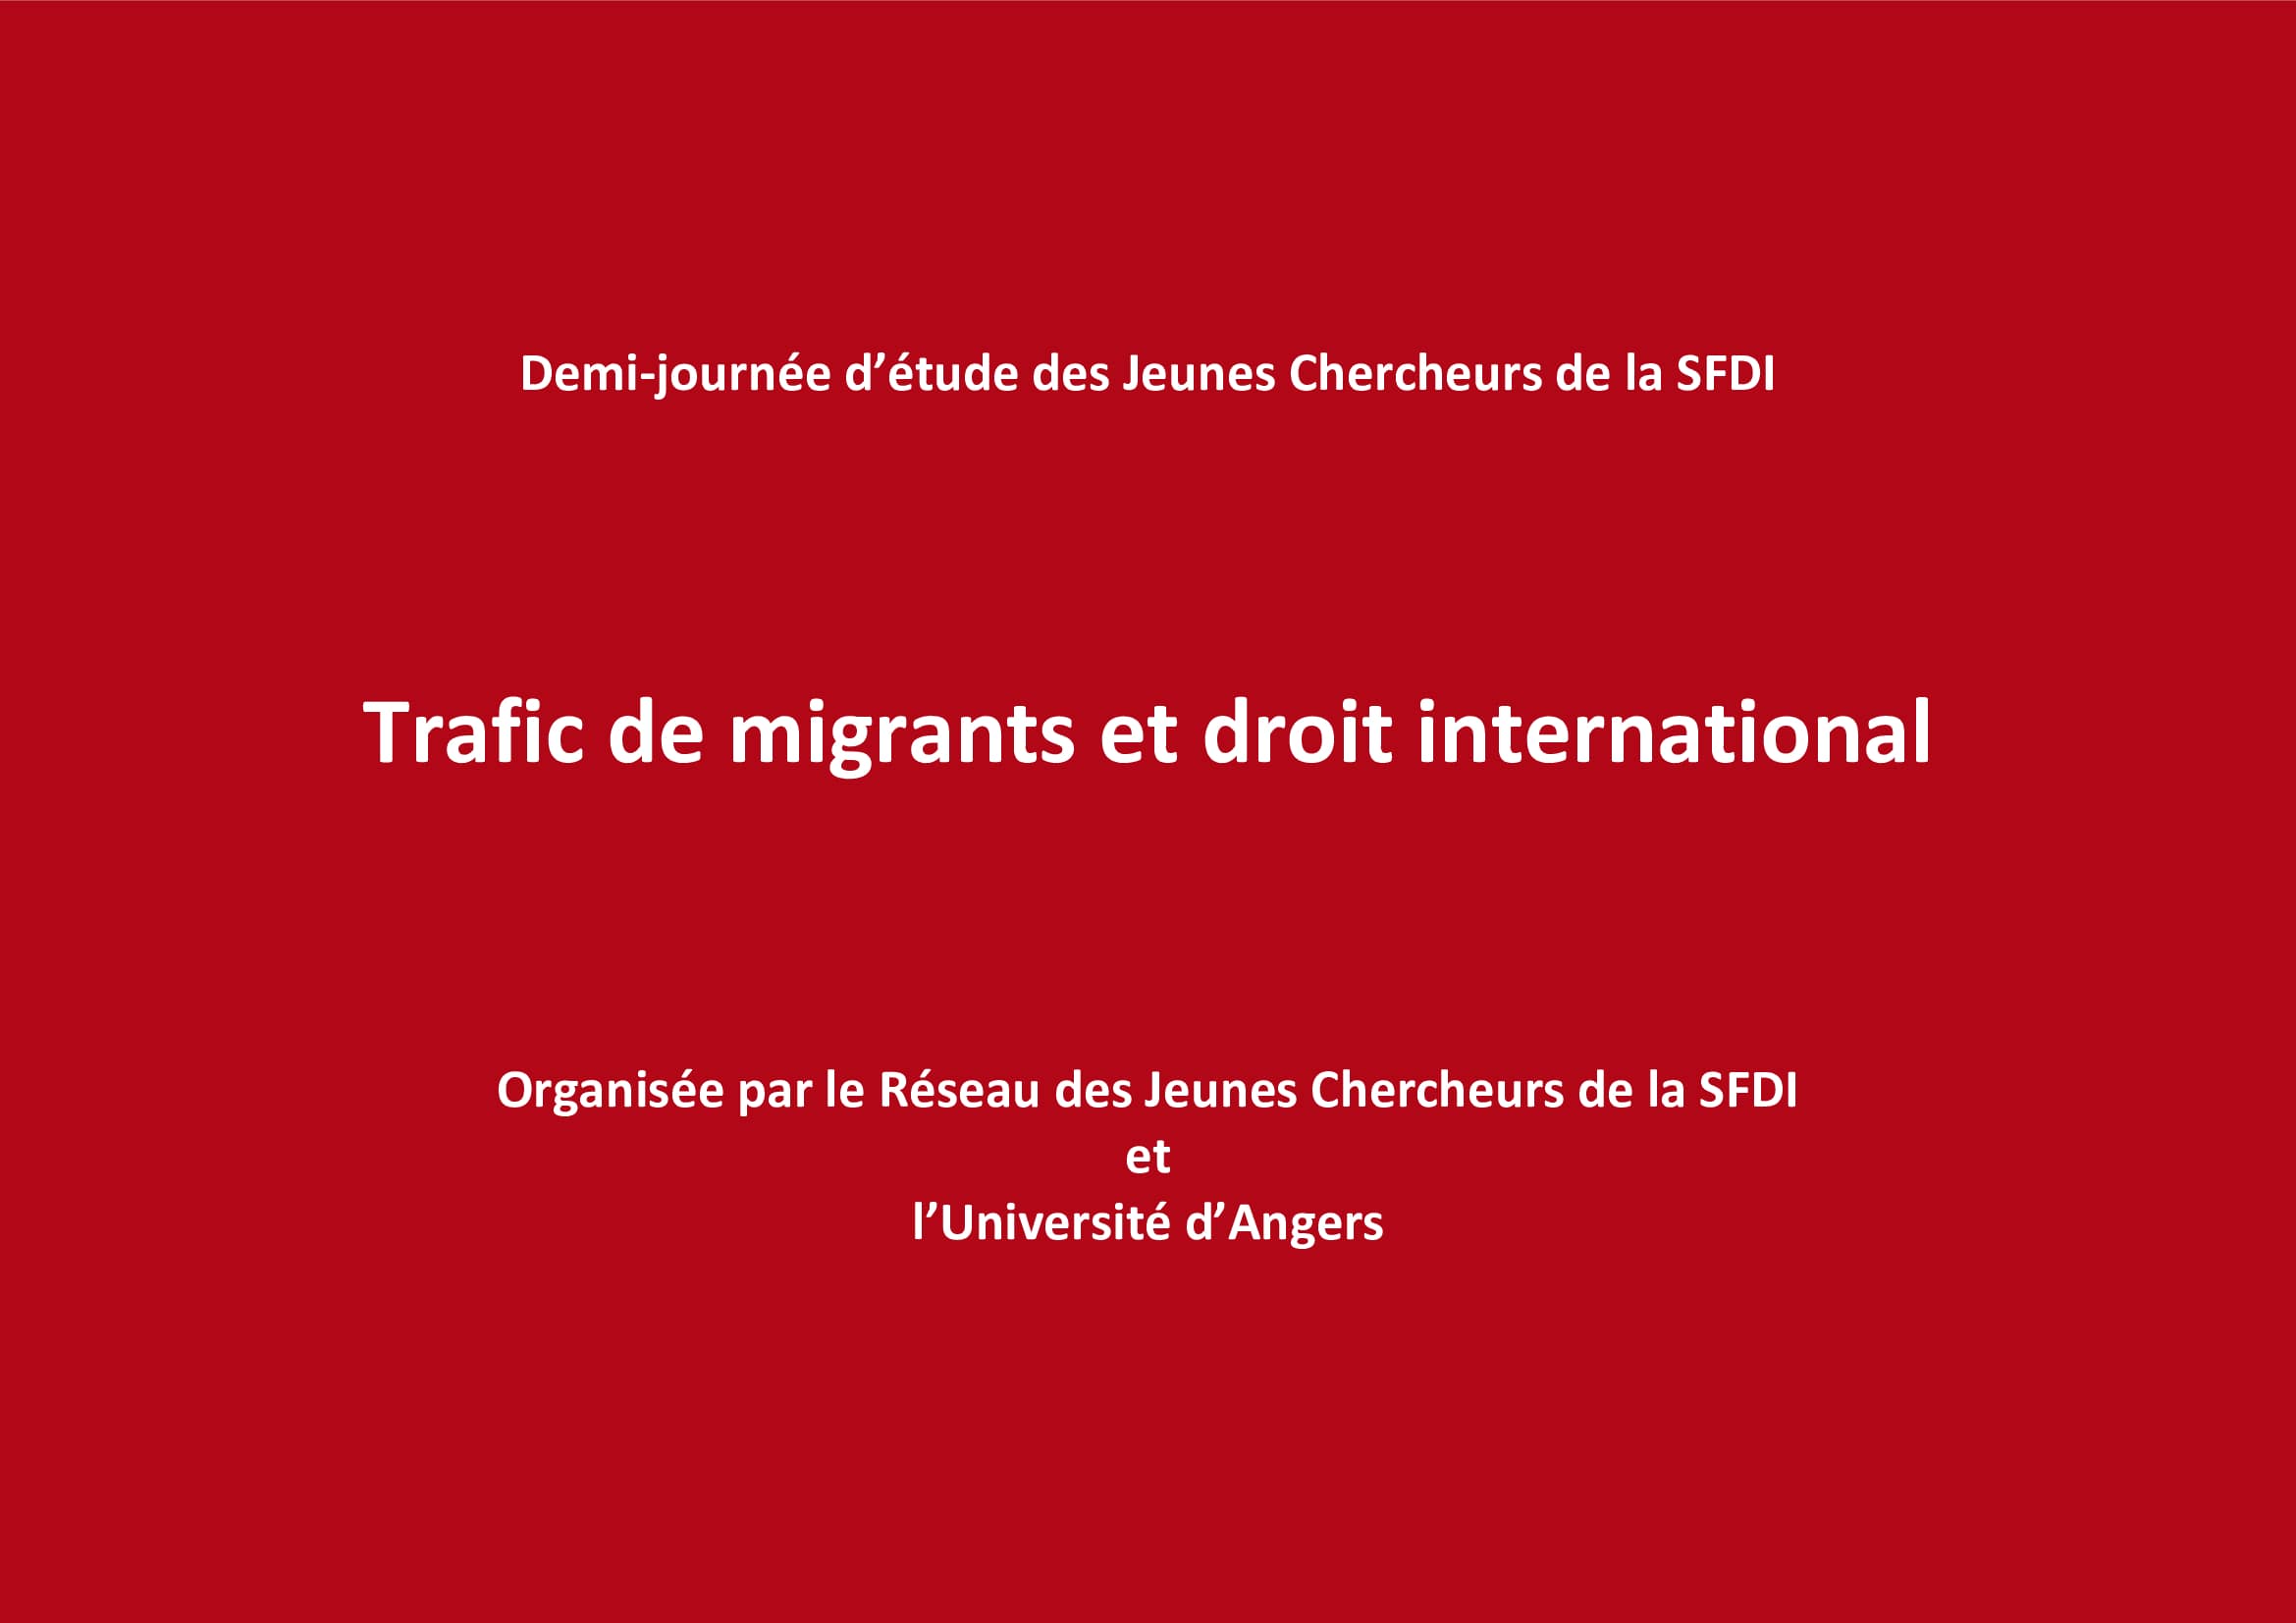 Quelle réalité pour la lutte communautaire contre le trafic de migrants dans un contexte de crise ? Par L. Fontfrède